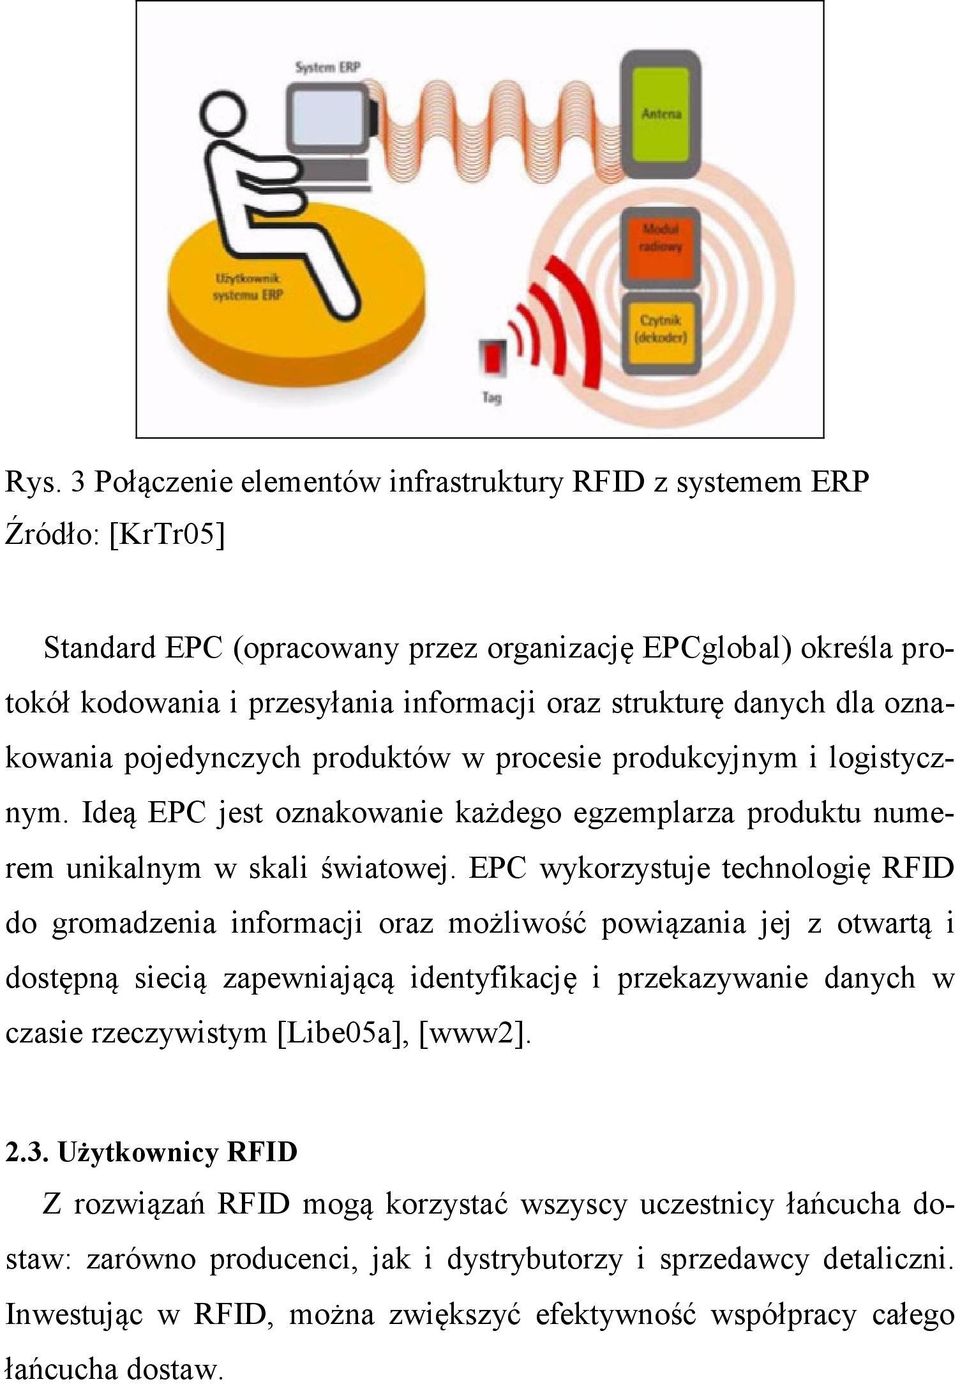 EPC wykorzystuje technologię RFID do gromadzenia informacji oraz możliwość powiązania jej z otwartą i dostępną siecią zapewniającą identyfikację i przekazywanie danych w czasie rzeczywistym